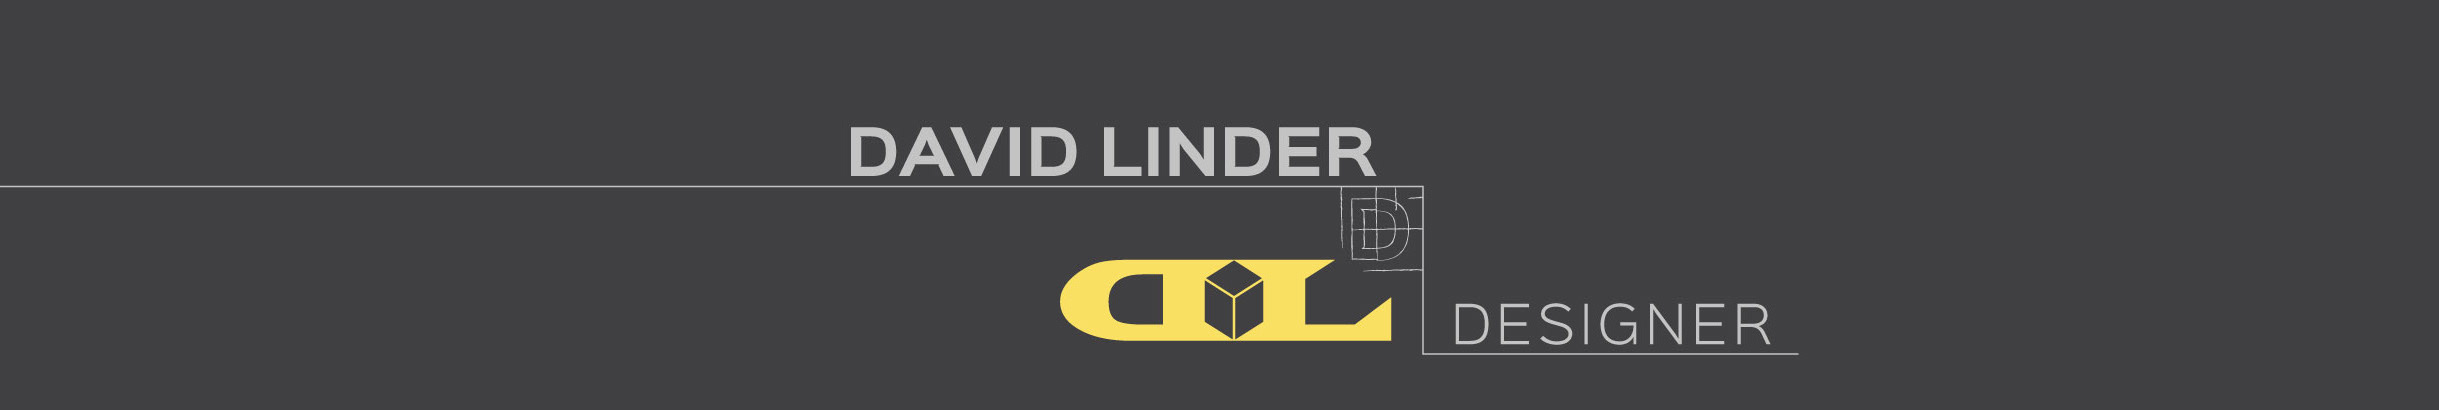 David Linder's profile banner